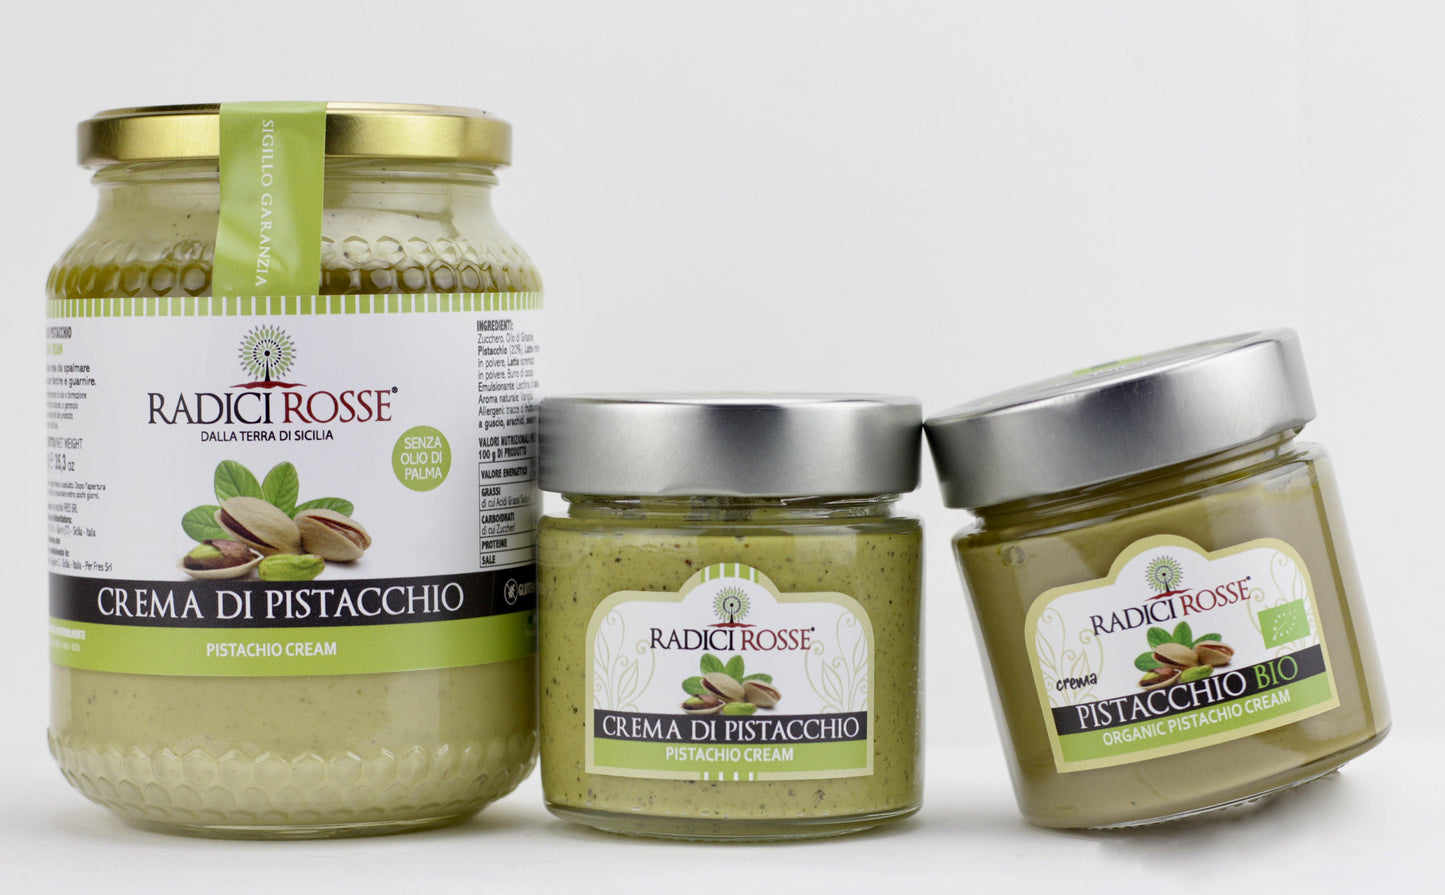 Crema di pistacchio - I migliori prodotti Made in Italy da Fiera Monza e Brianza SHOP - Solo 29€! Acquista subito su Fiera di Monza Shop!